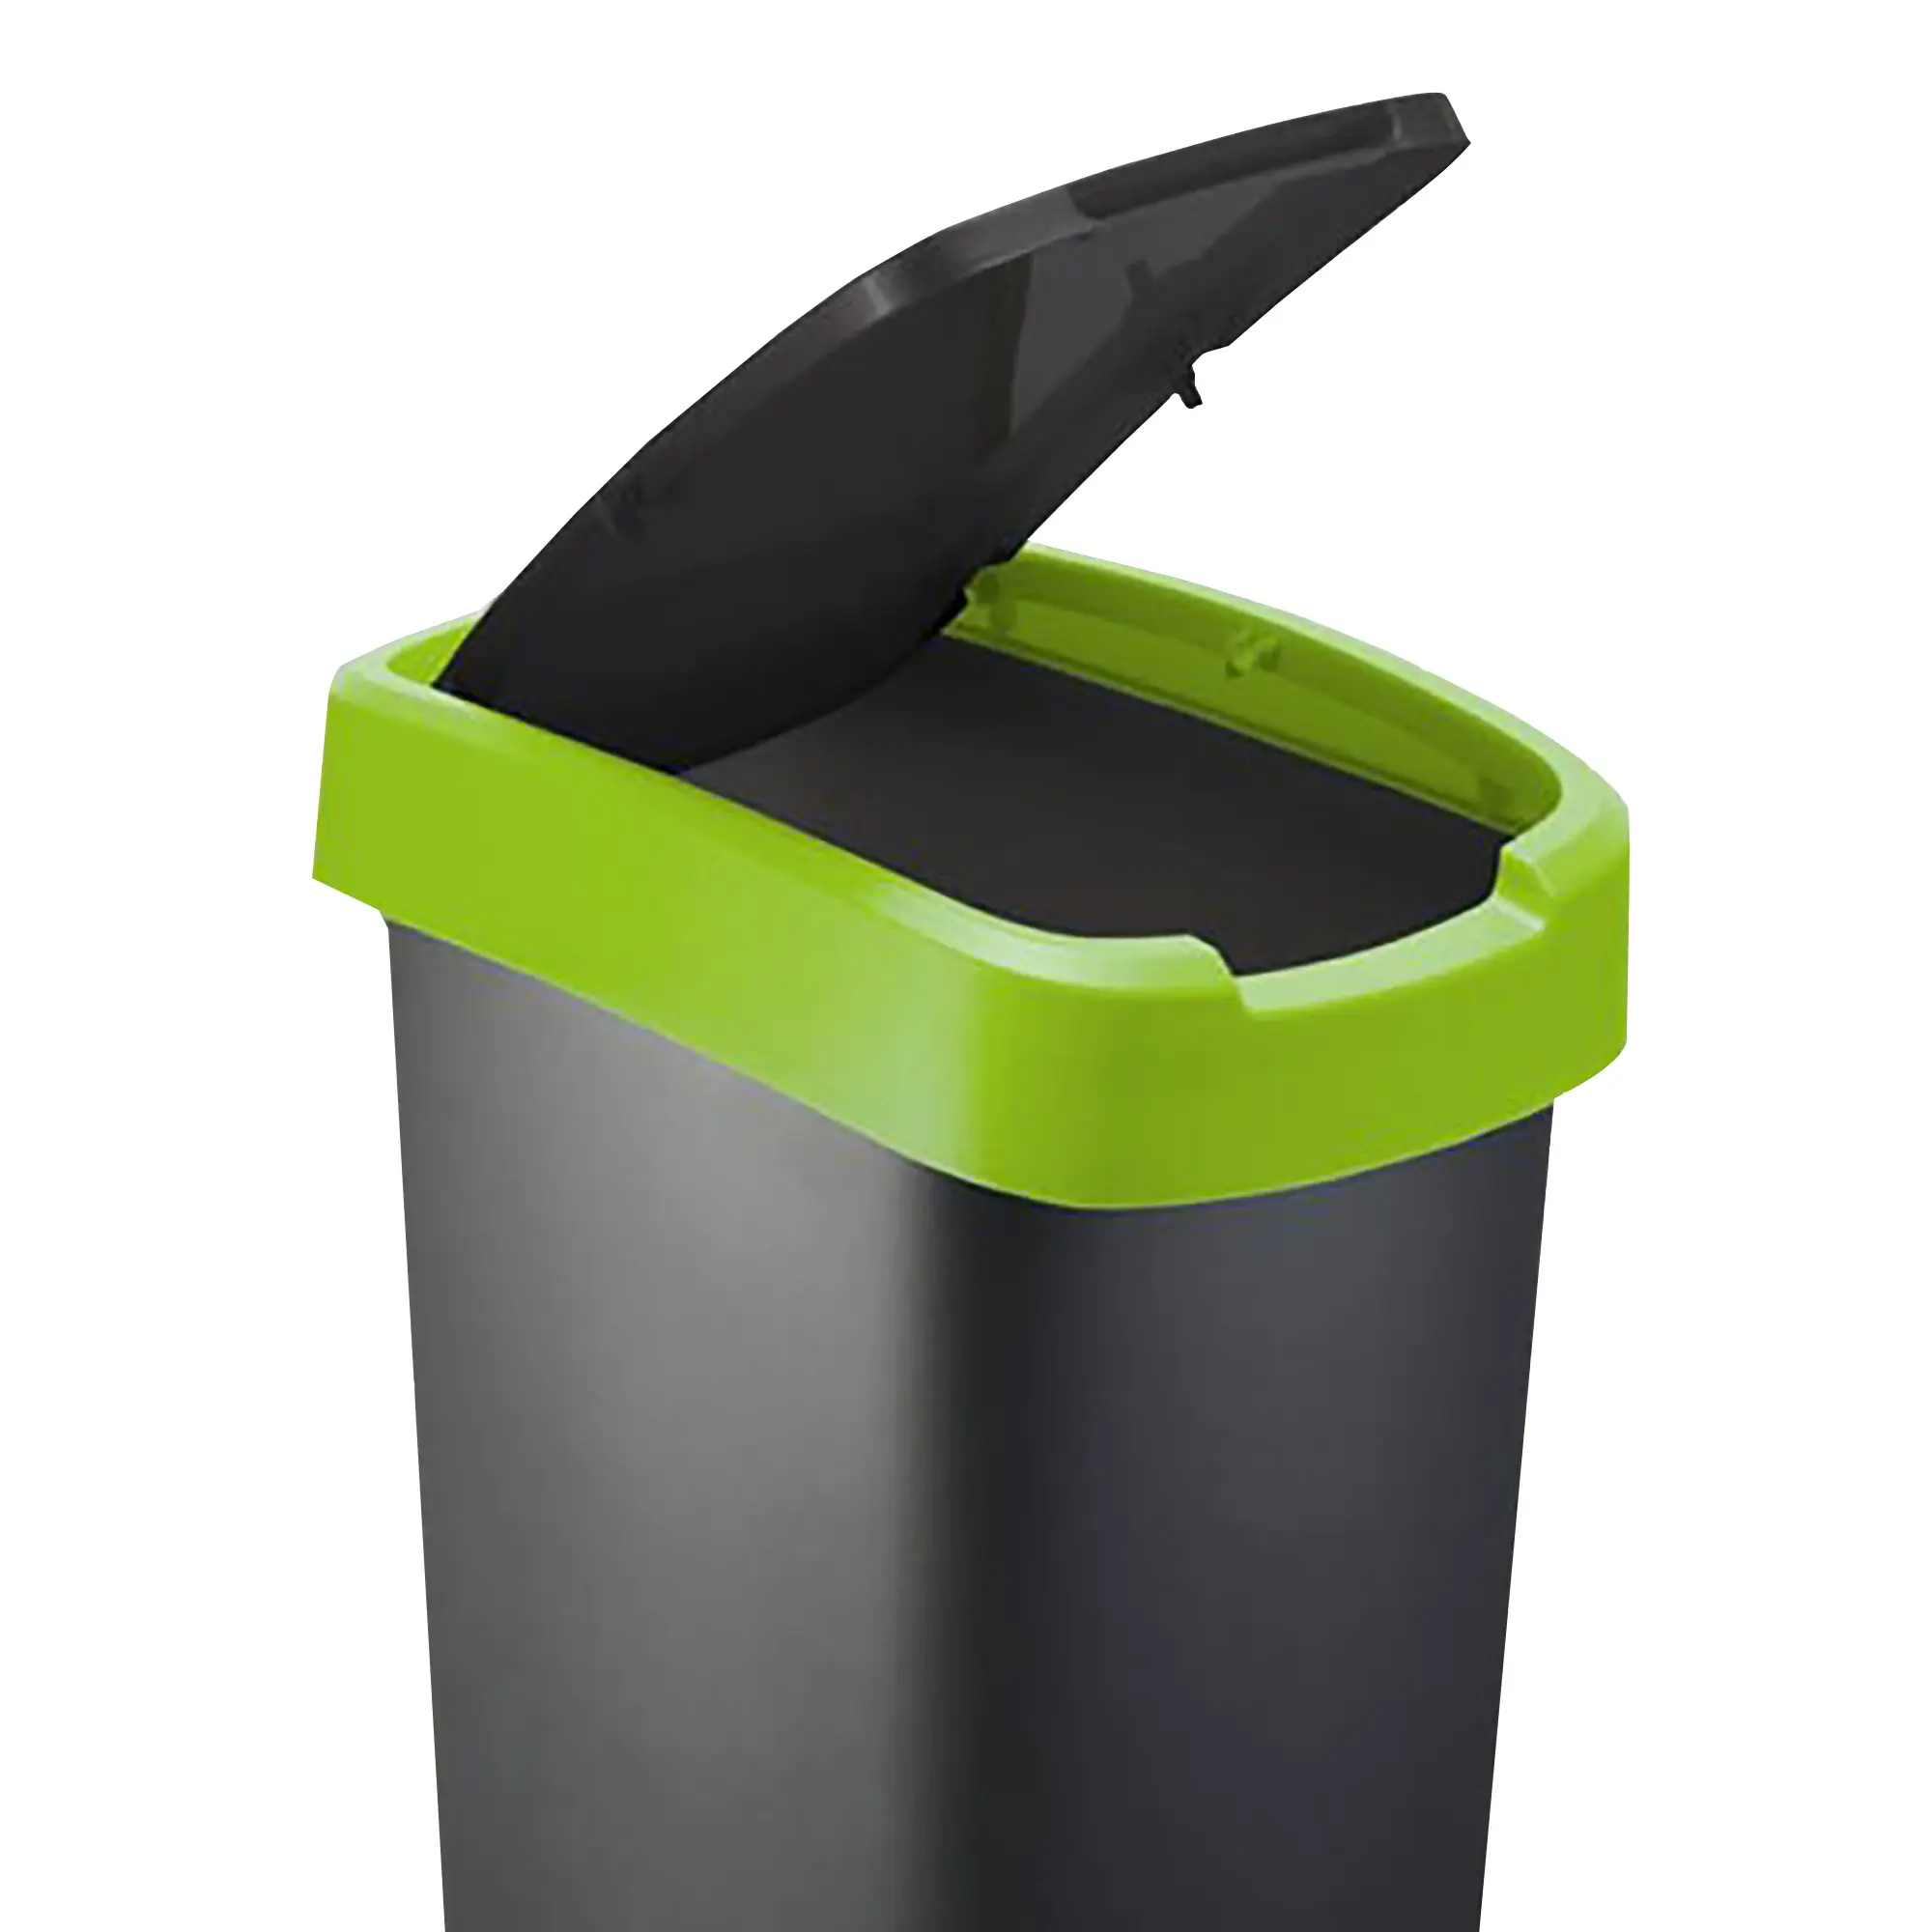 RothoPro Twist Abfallbehälter 25 Liter schwarz/grün Klappfunktion 59135414